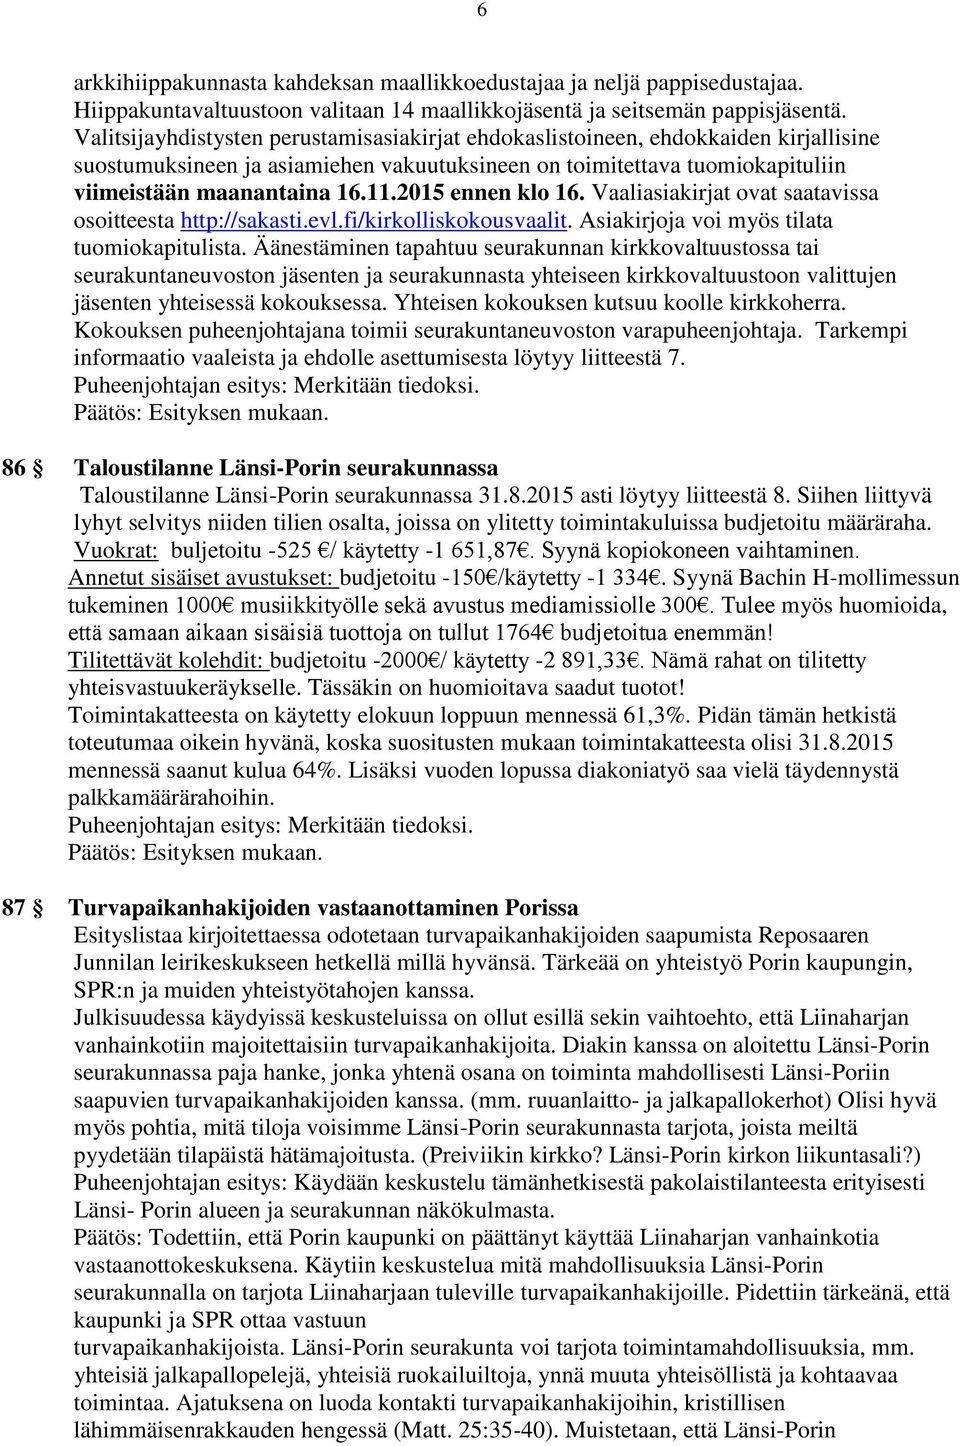 2015 ennen klo 16. Vaaliasiakirjat ovat saatavissa osoitteesta http://sakasti.evl.fi/kirkolliskokousvaalit. Asiakirjoja voi myös tilata tuomiokapitulista.